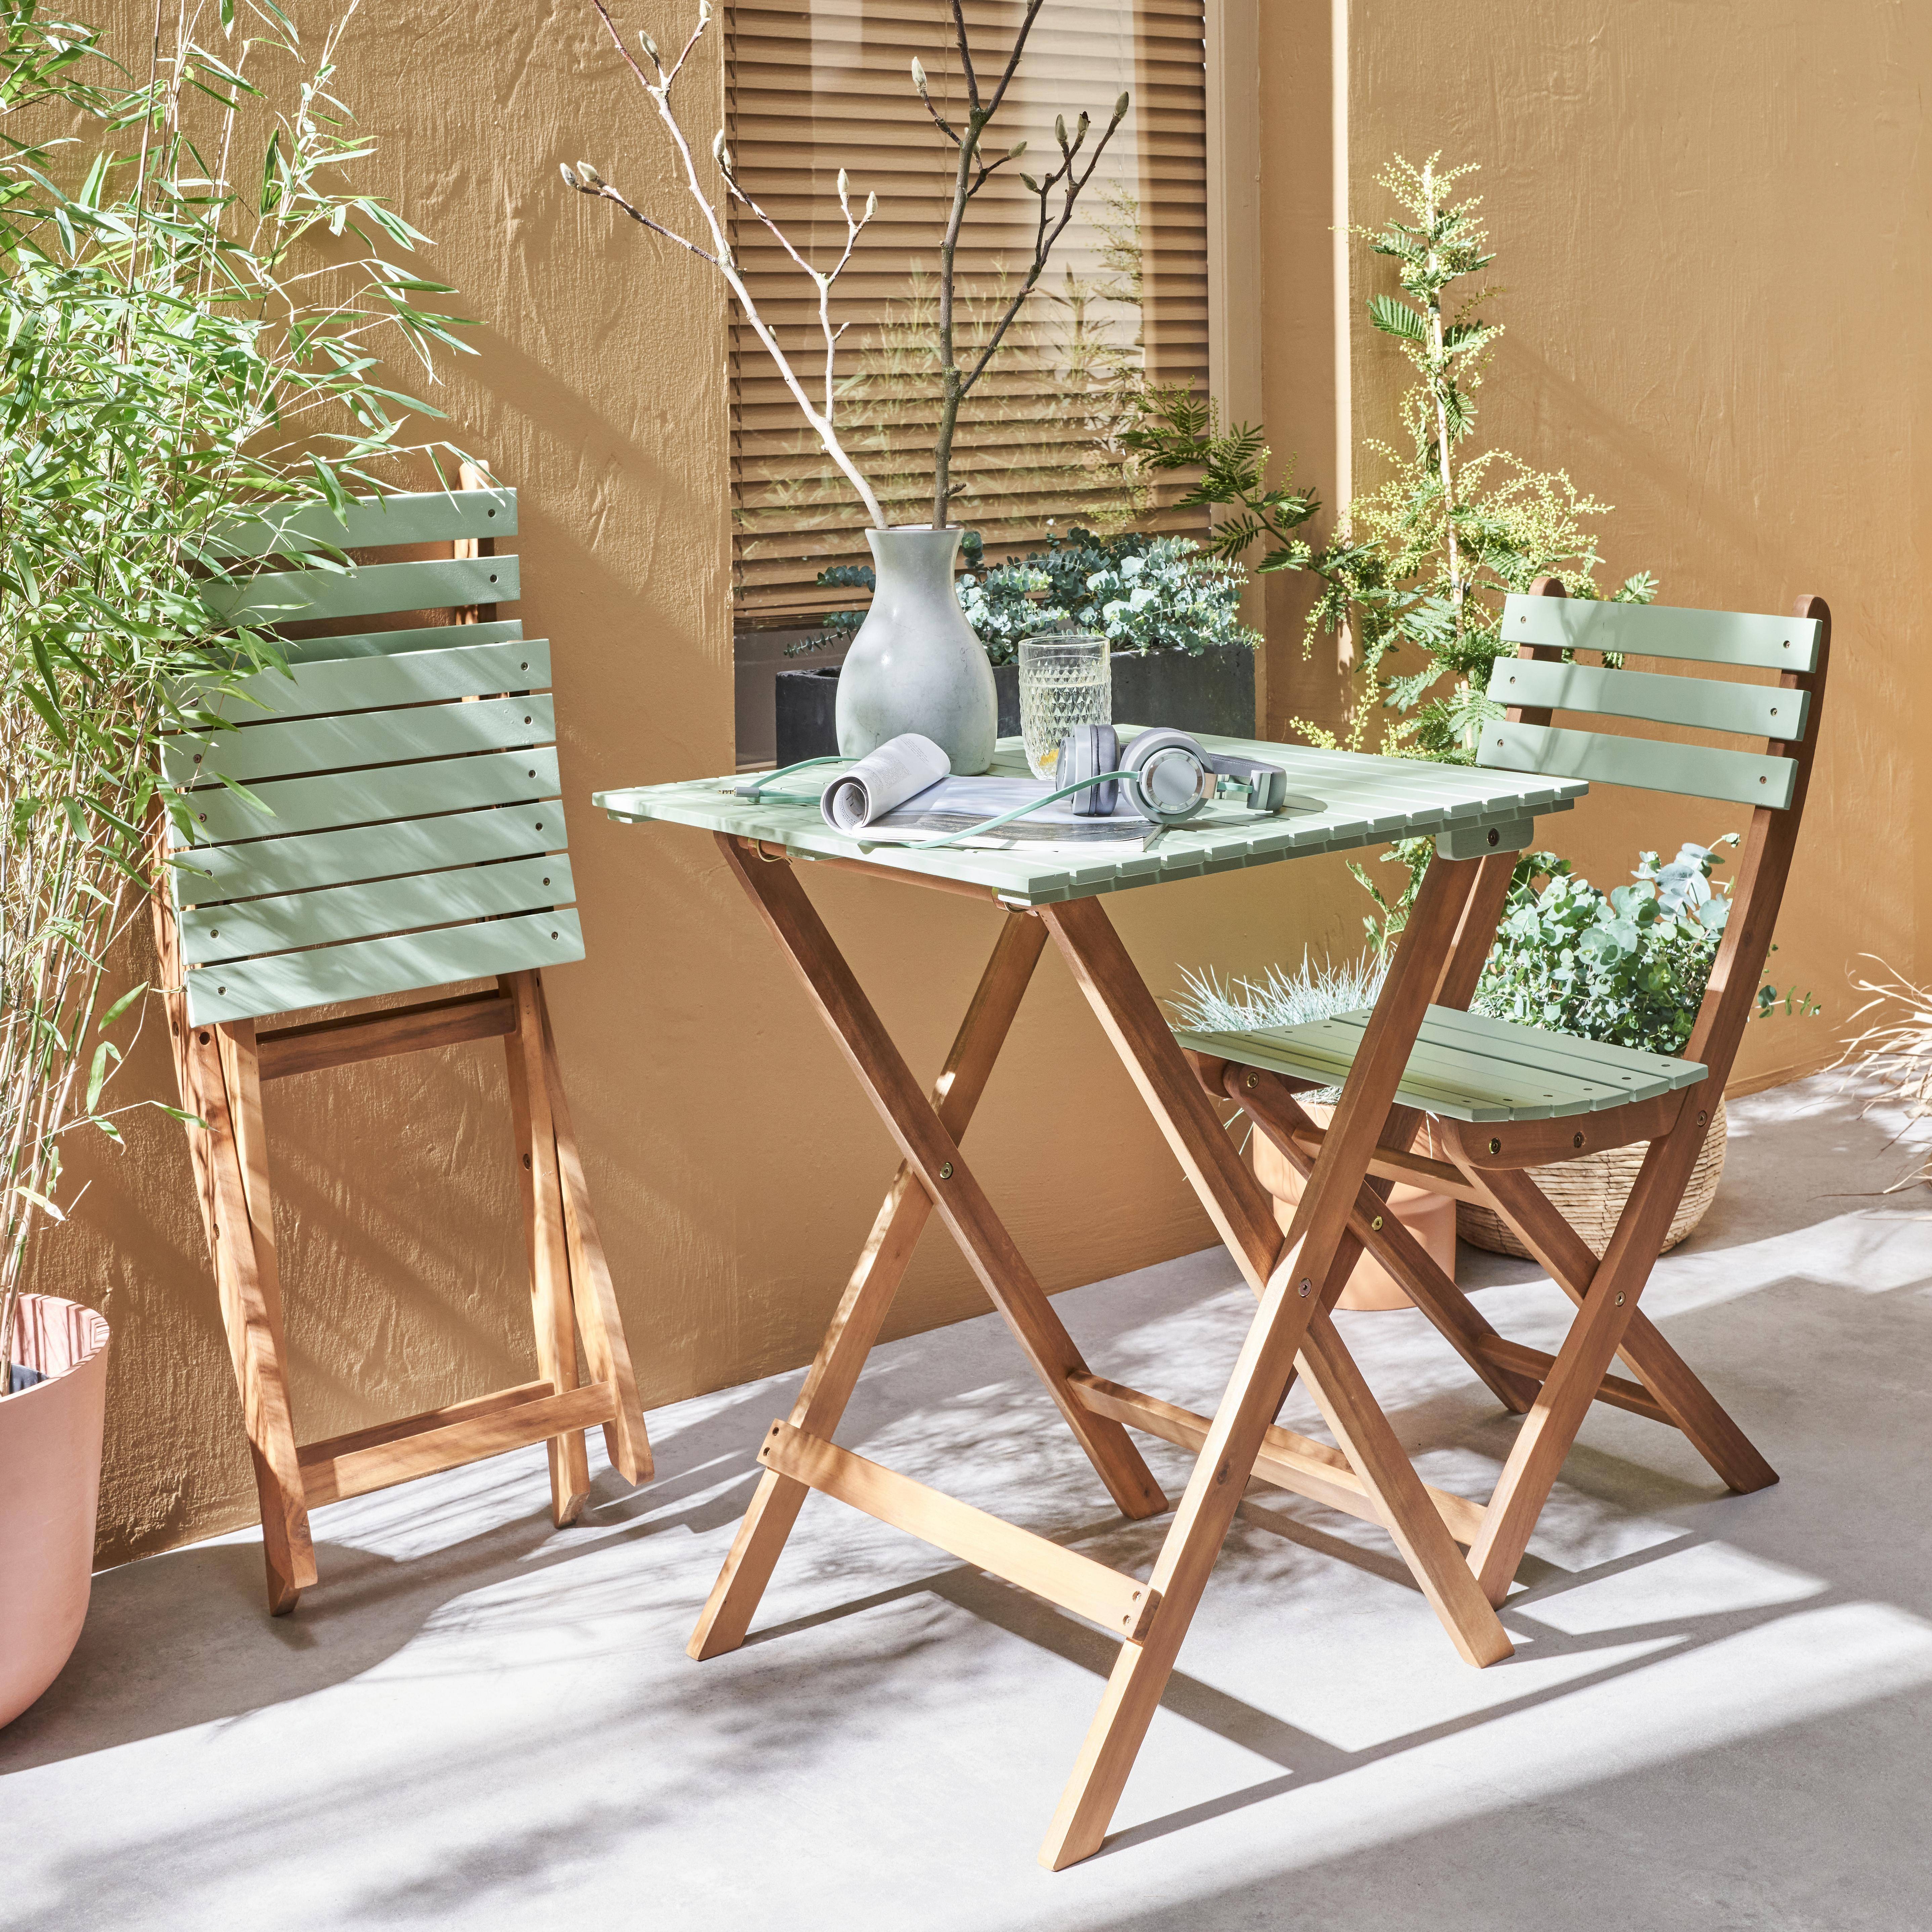 Conjunto de jardín de madera Bistro 60x60cm - Barcelona - verde grisáceo, mesa plegable bicolor con 2 sillas plegables, acacia Photo2